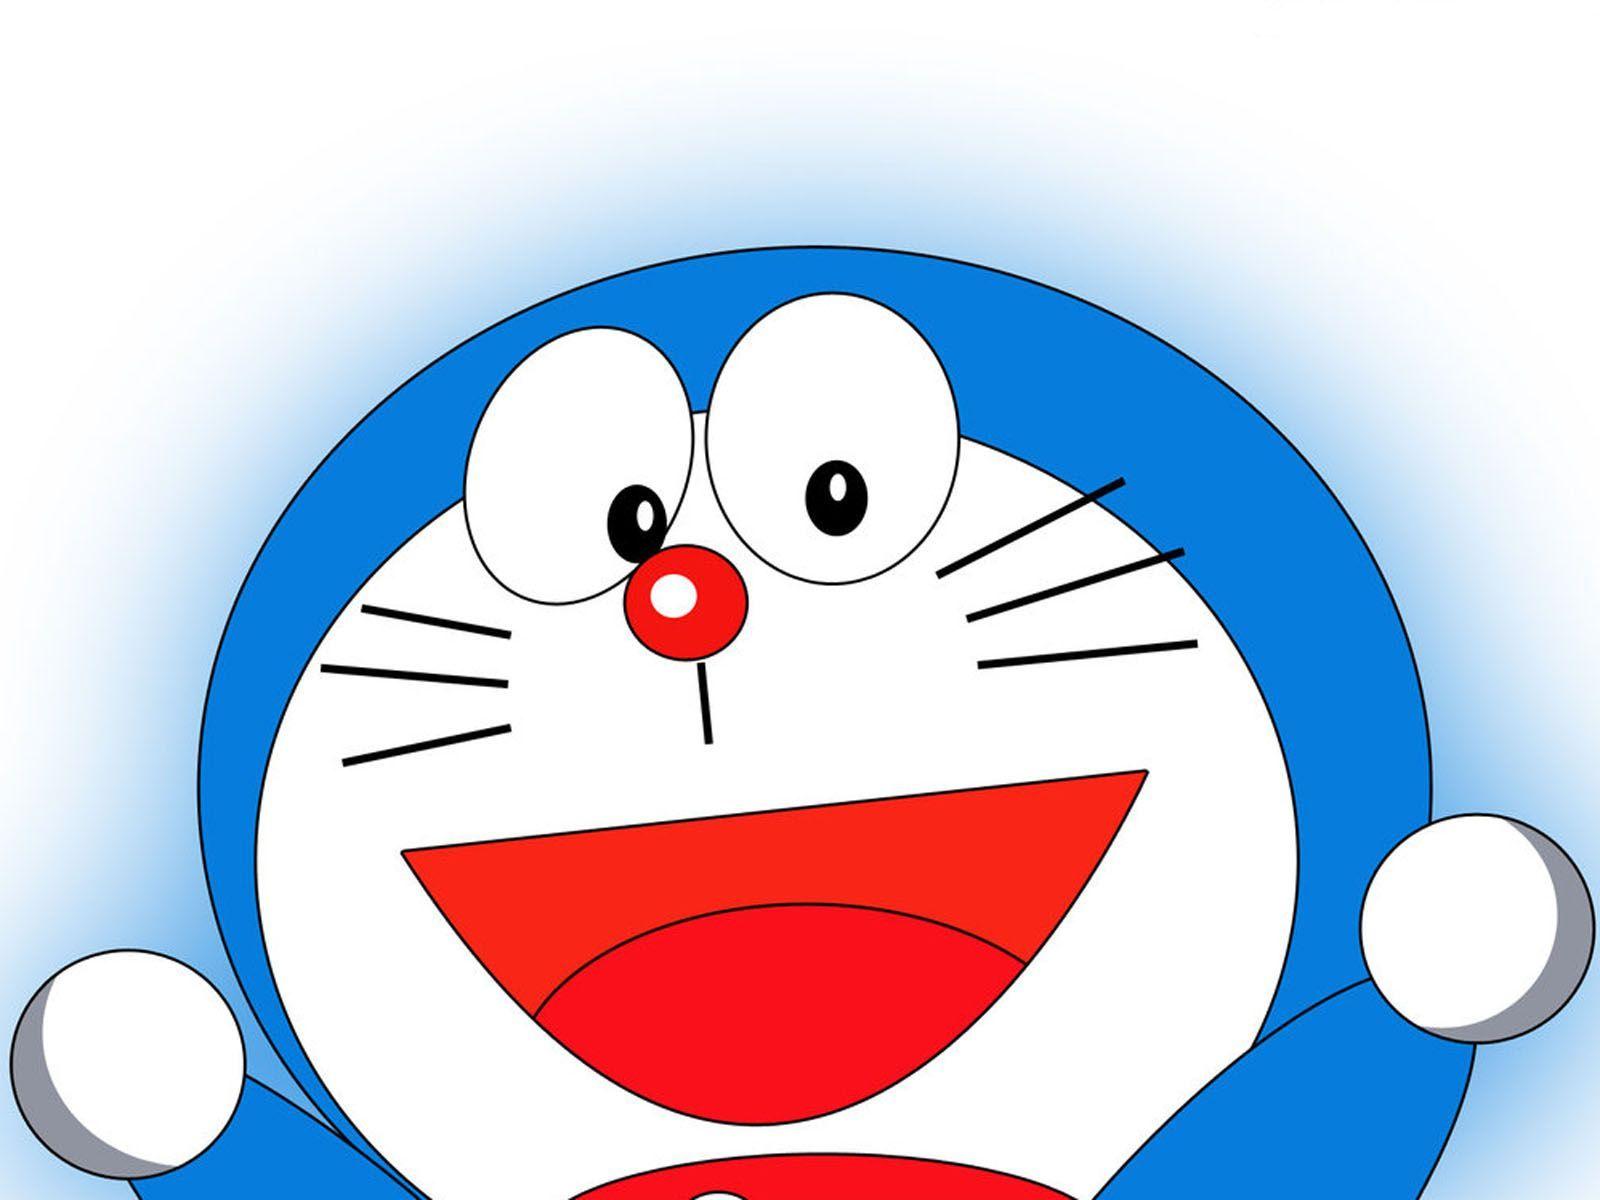 Các hình nền Doraemon đẹp tuyệt vời đang chờ đón bạn khám phá và tải xuống ngay bây giờ. Những hình ảnh cực kỳ sống động và đầy tinh tế của chú mèo máy này sẽ mang đến cho bạn một không gian làm việc và giải trí độc đáo và đẳng cấp.